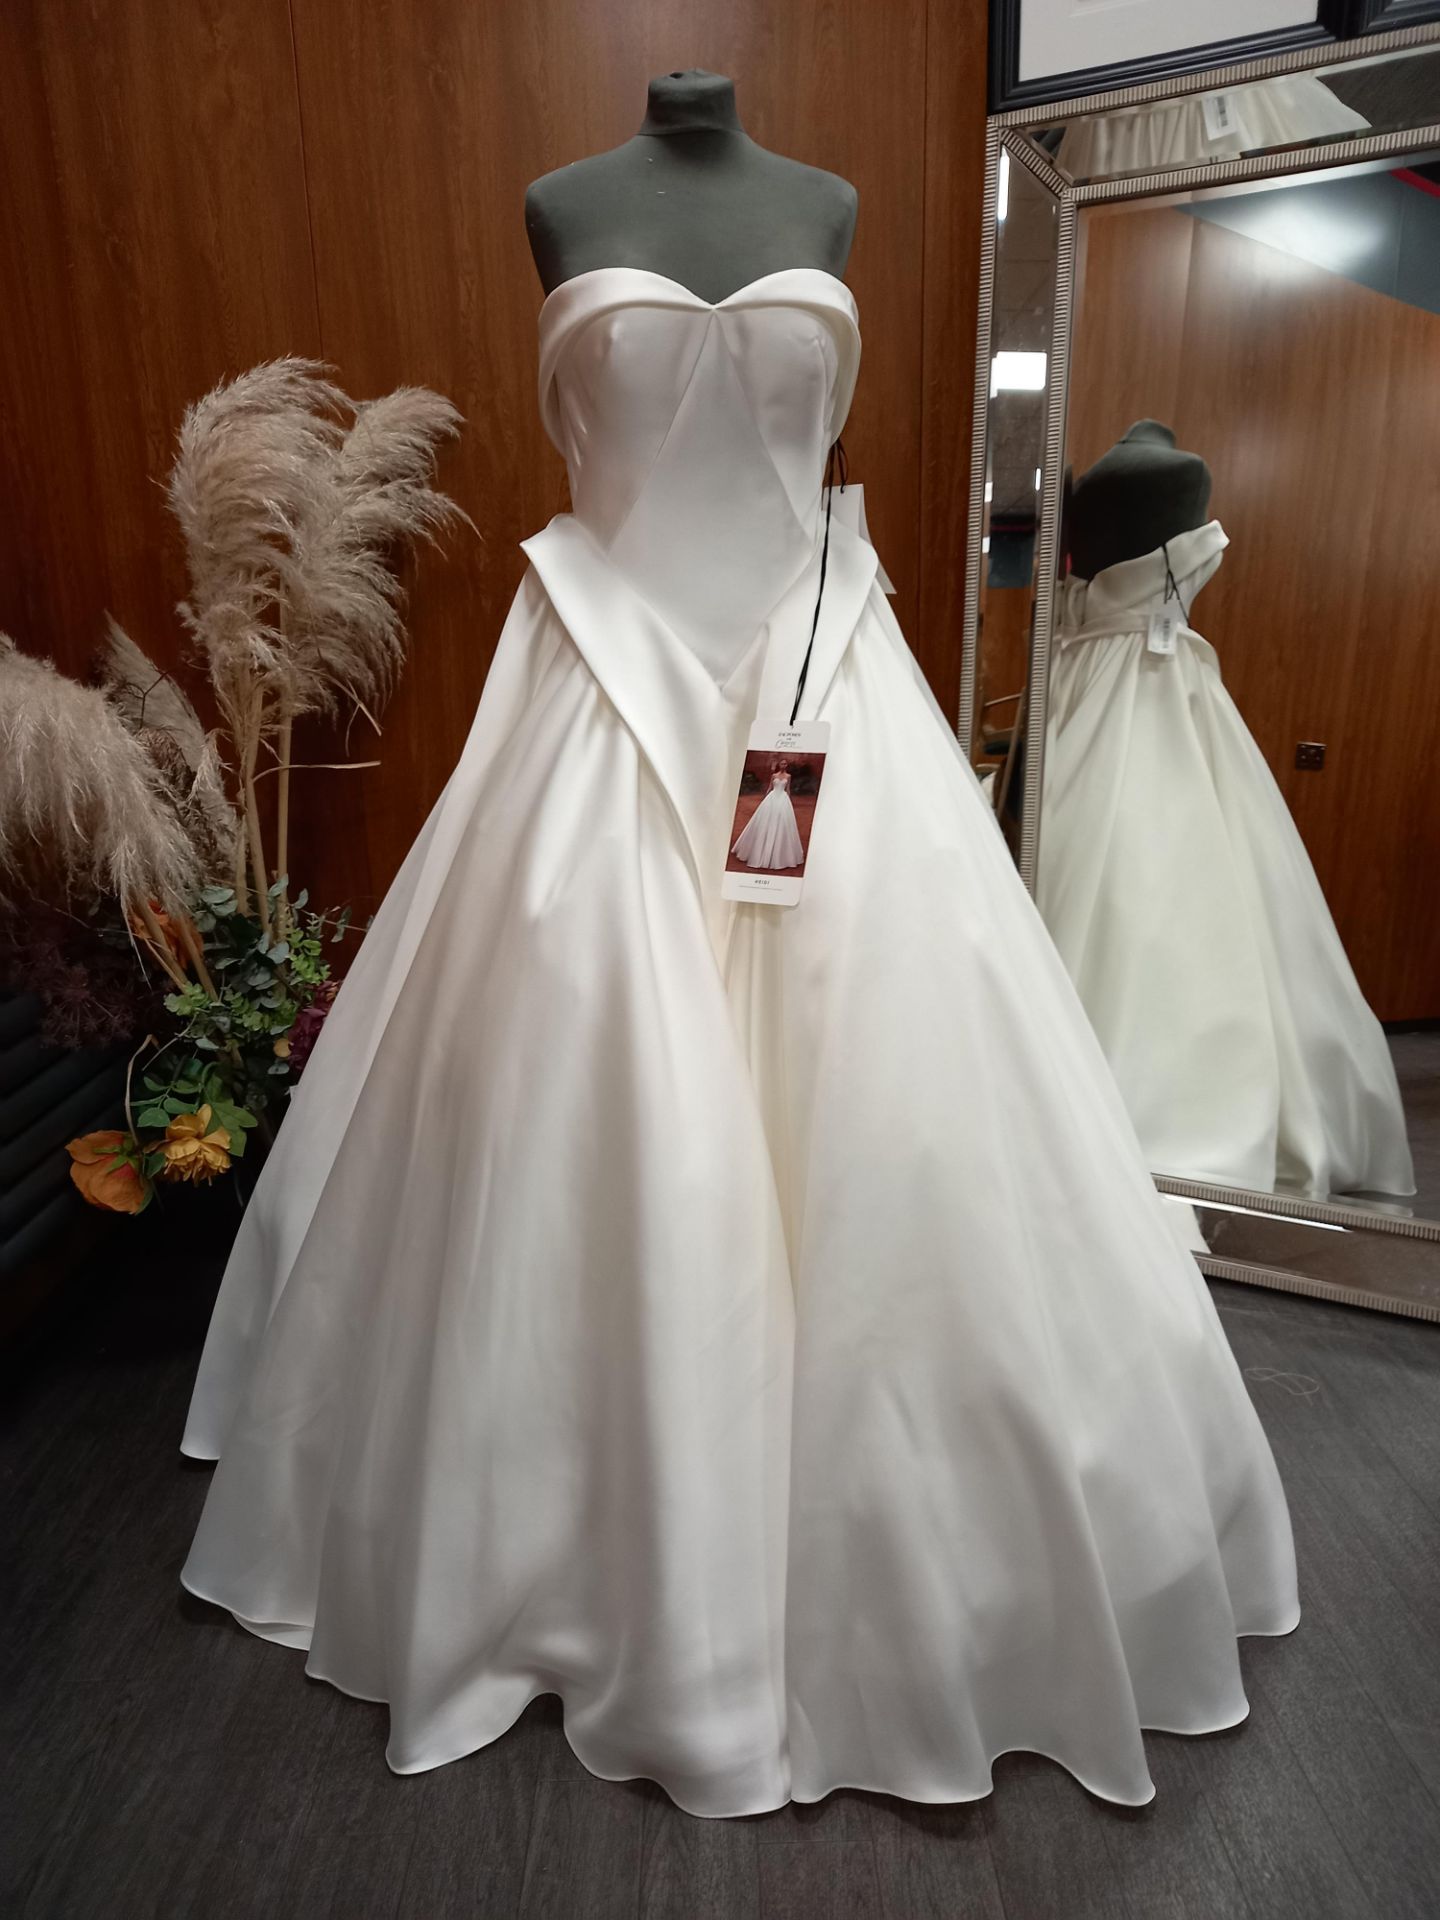 1 X (ZAC POSEN FOR WHITE) WEDDING DRESS MODEL - HEIDI GARZA PIQUE COLOUR - OFF WHITE SIZE - UK 12